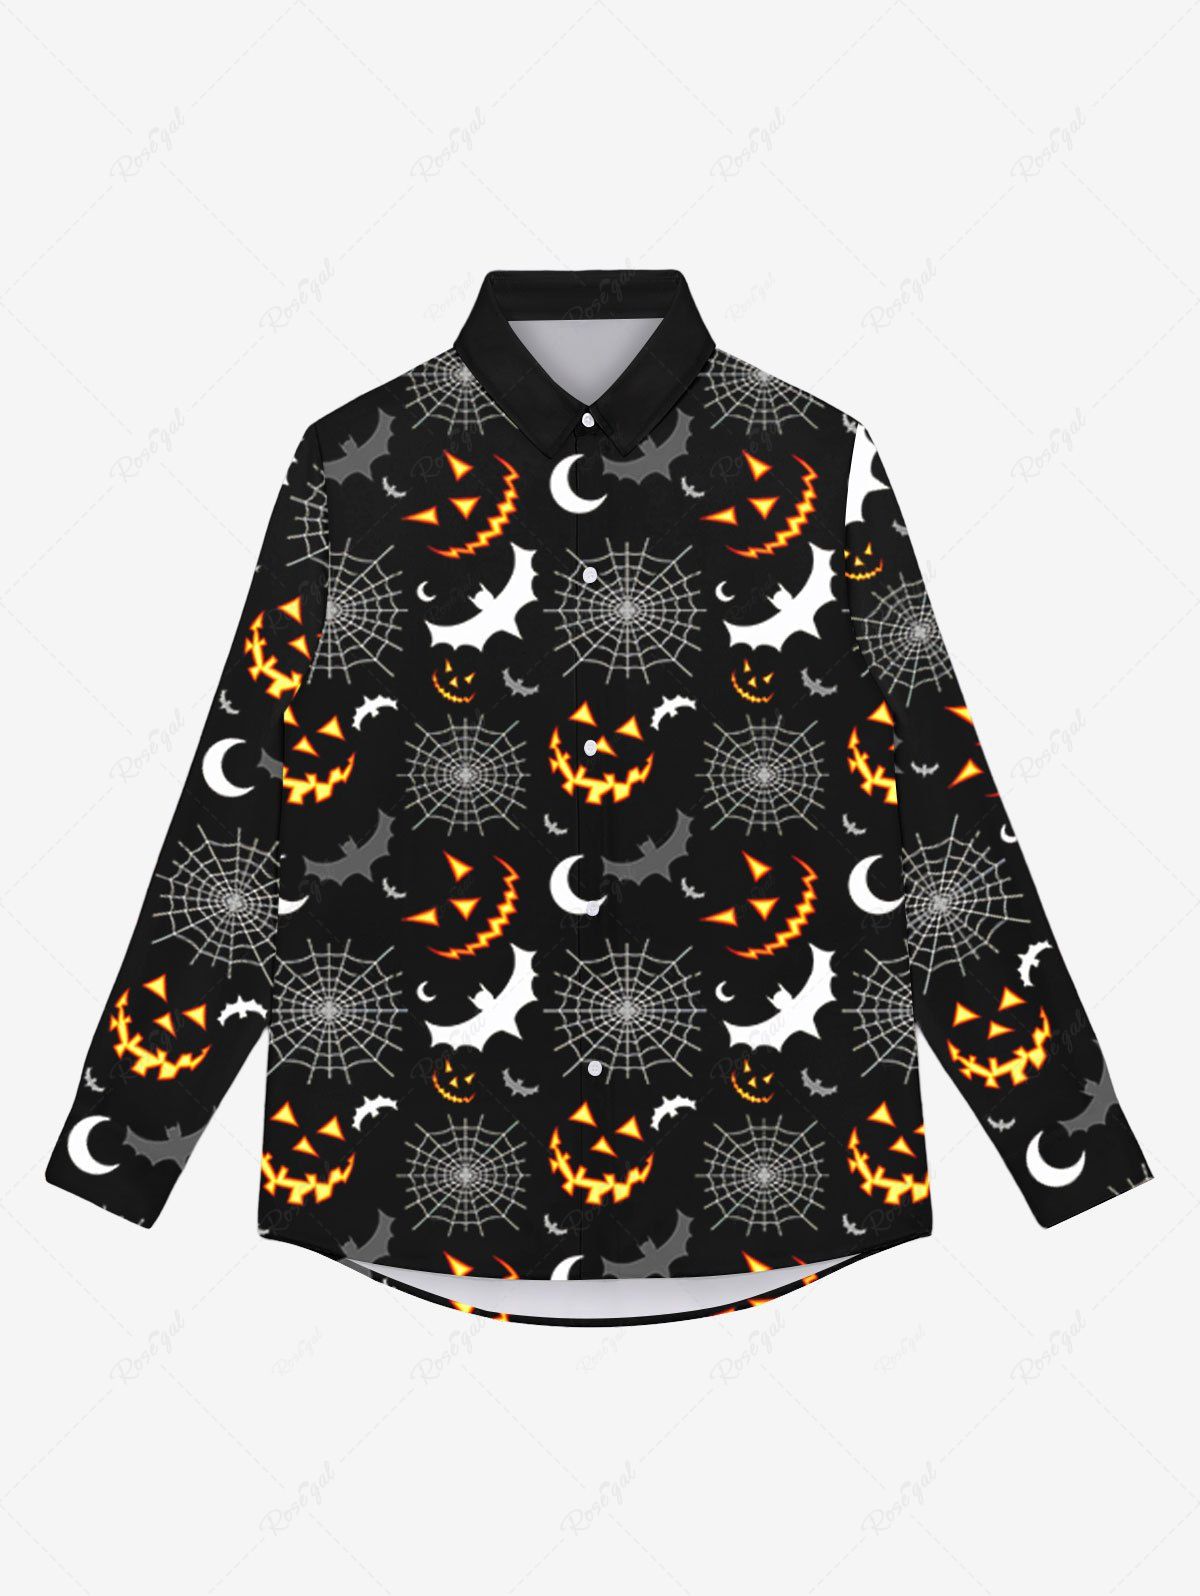 Fancy Gothic Spider Web Pumpkin Bat Moon Print Halloween Buttons Shirt For Men  